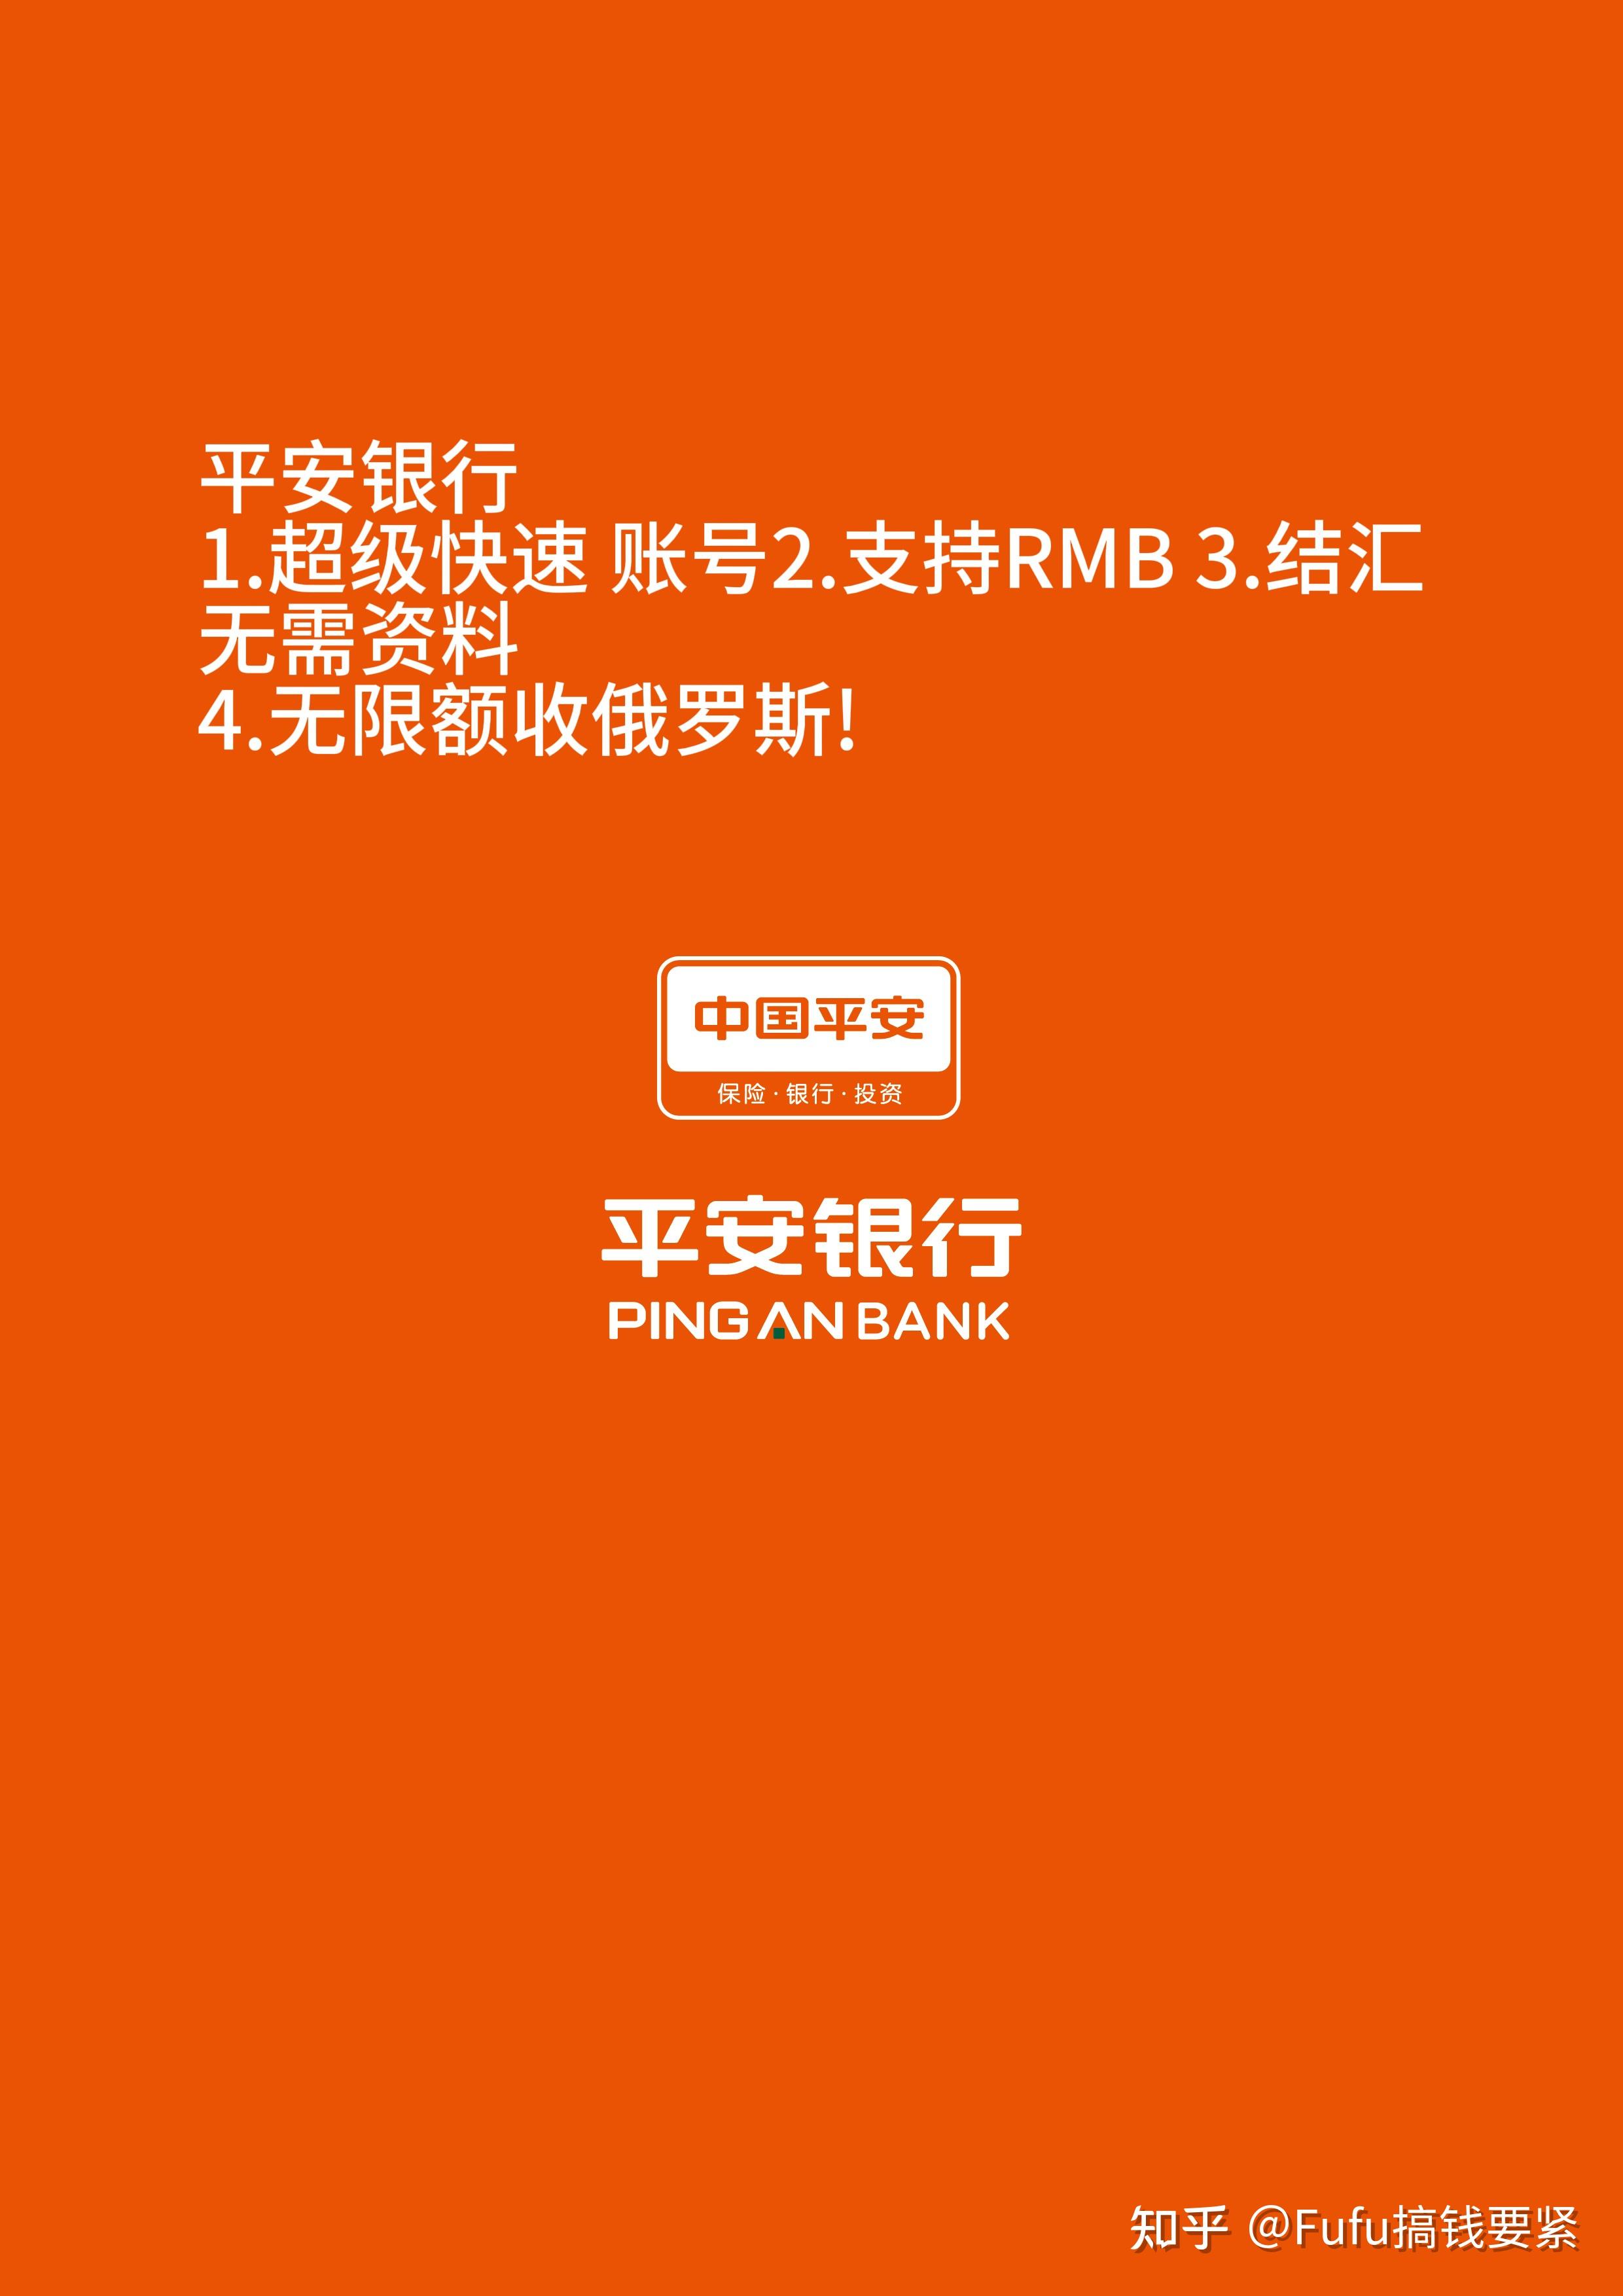 开通短信通知银行有收费吗_中国银行短信通知怎么开通_中国银行短信业务开通